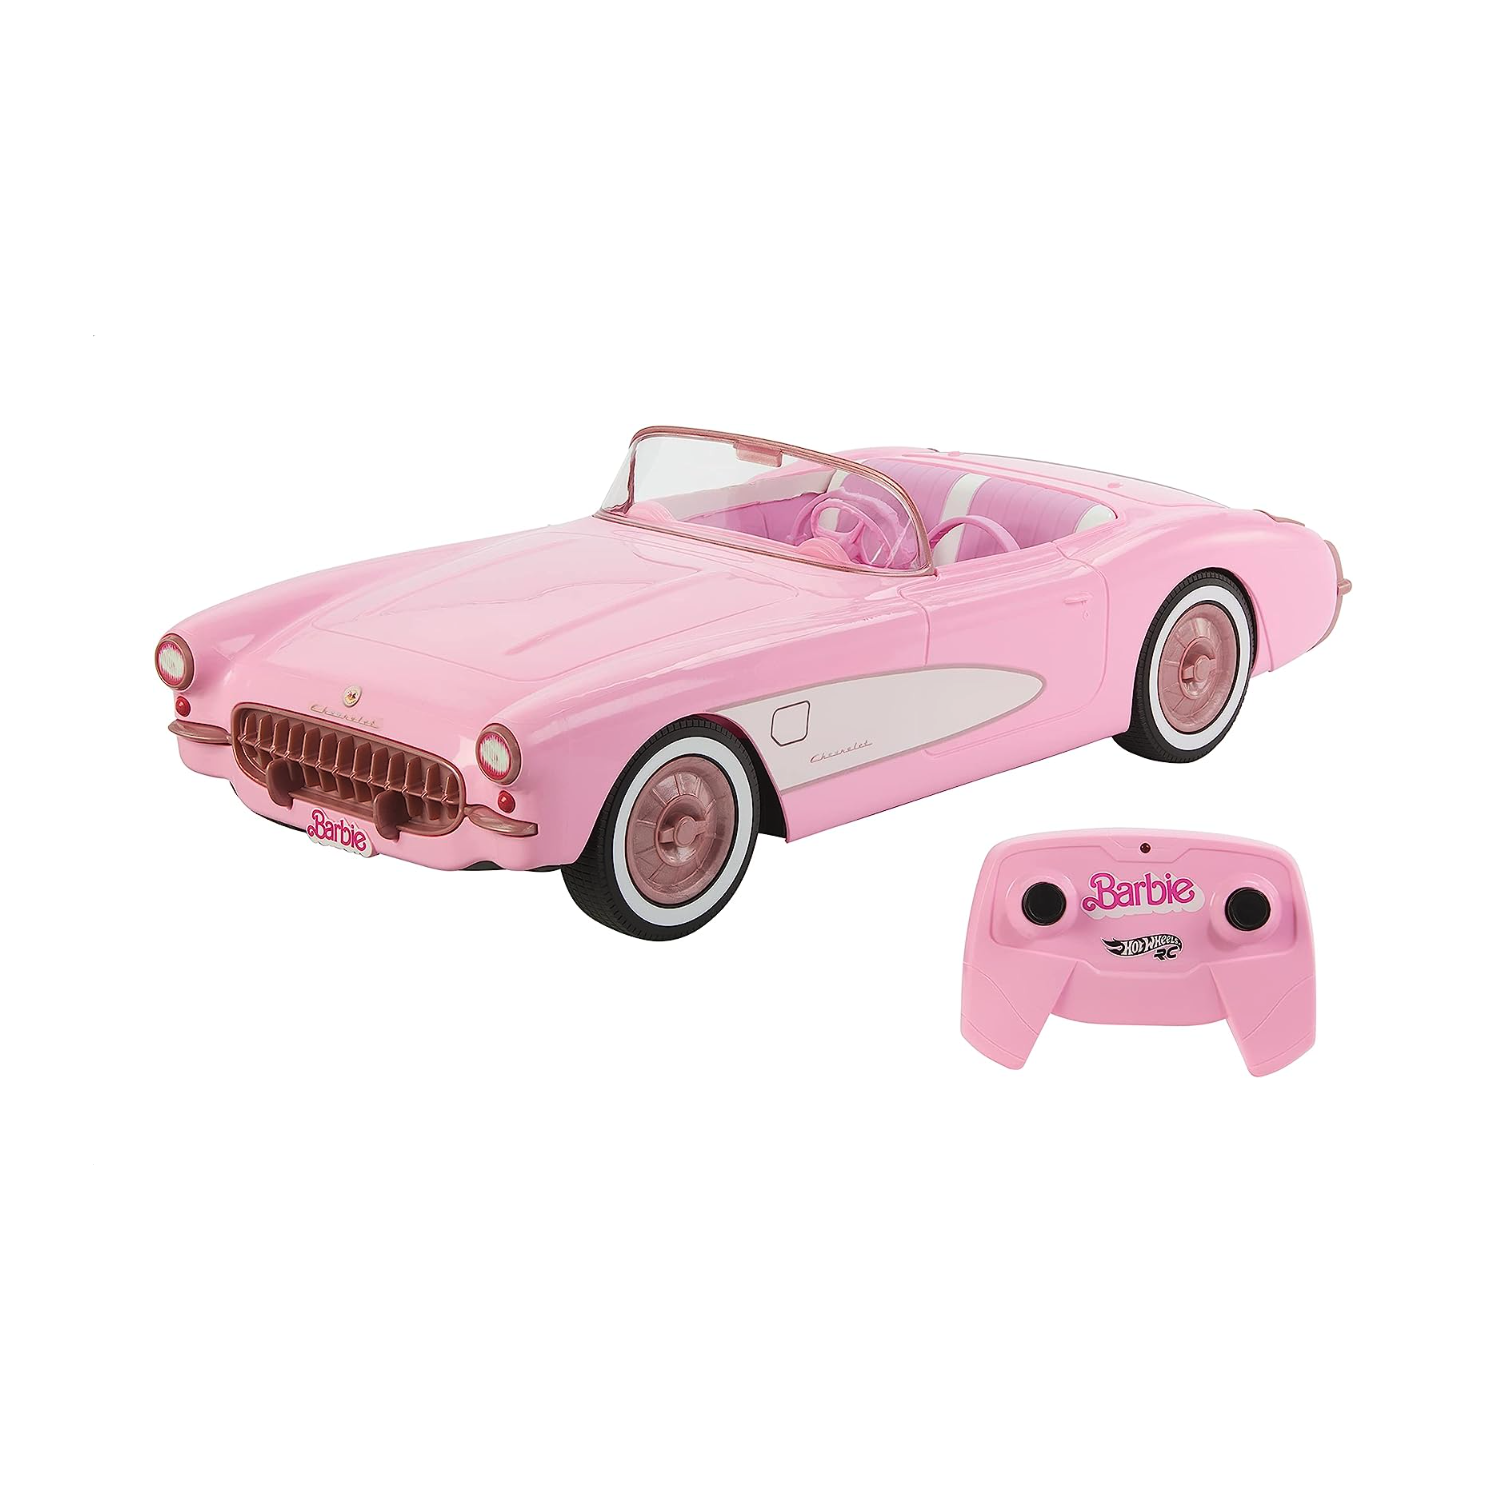 Hot Wheels – Barbie Corvette téléguidée, voiture jouet téléguidée à piles  du film Barbie